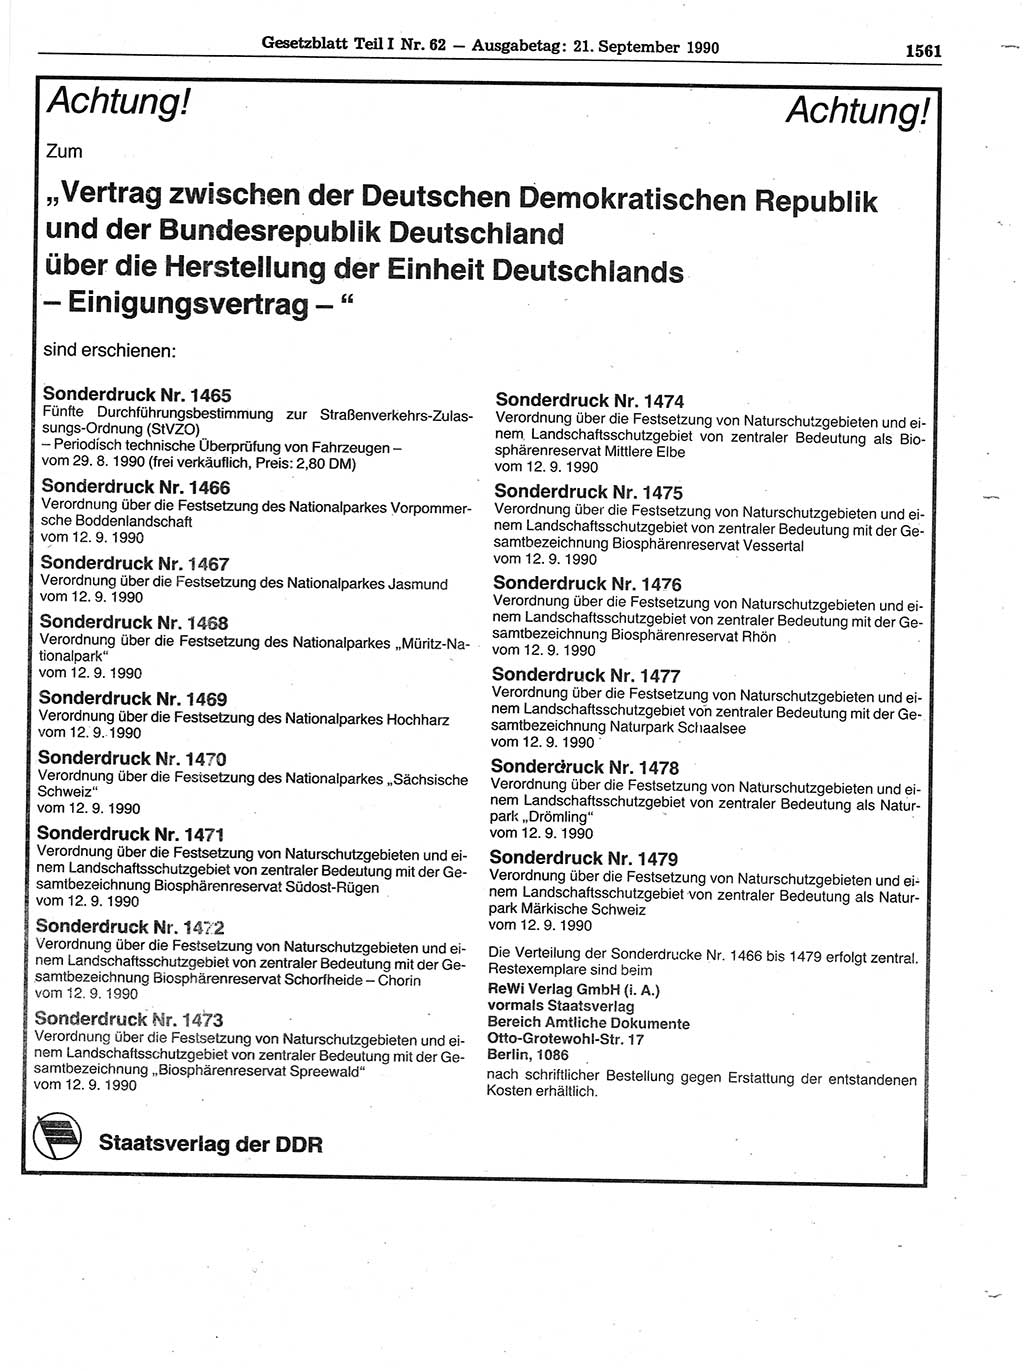 Gesetzblatt (GBl.) der Deutschen Demokratischen Republik (DDR) Teil Ⅰ 1990, Seite 1561 (GBl. DDR Ⅰ 1990, S. 1561)